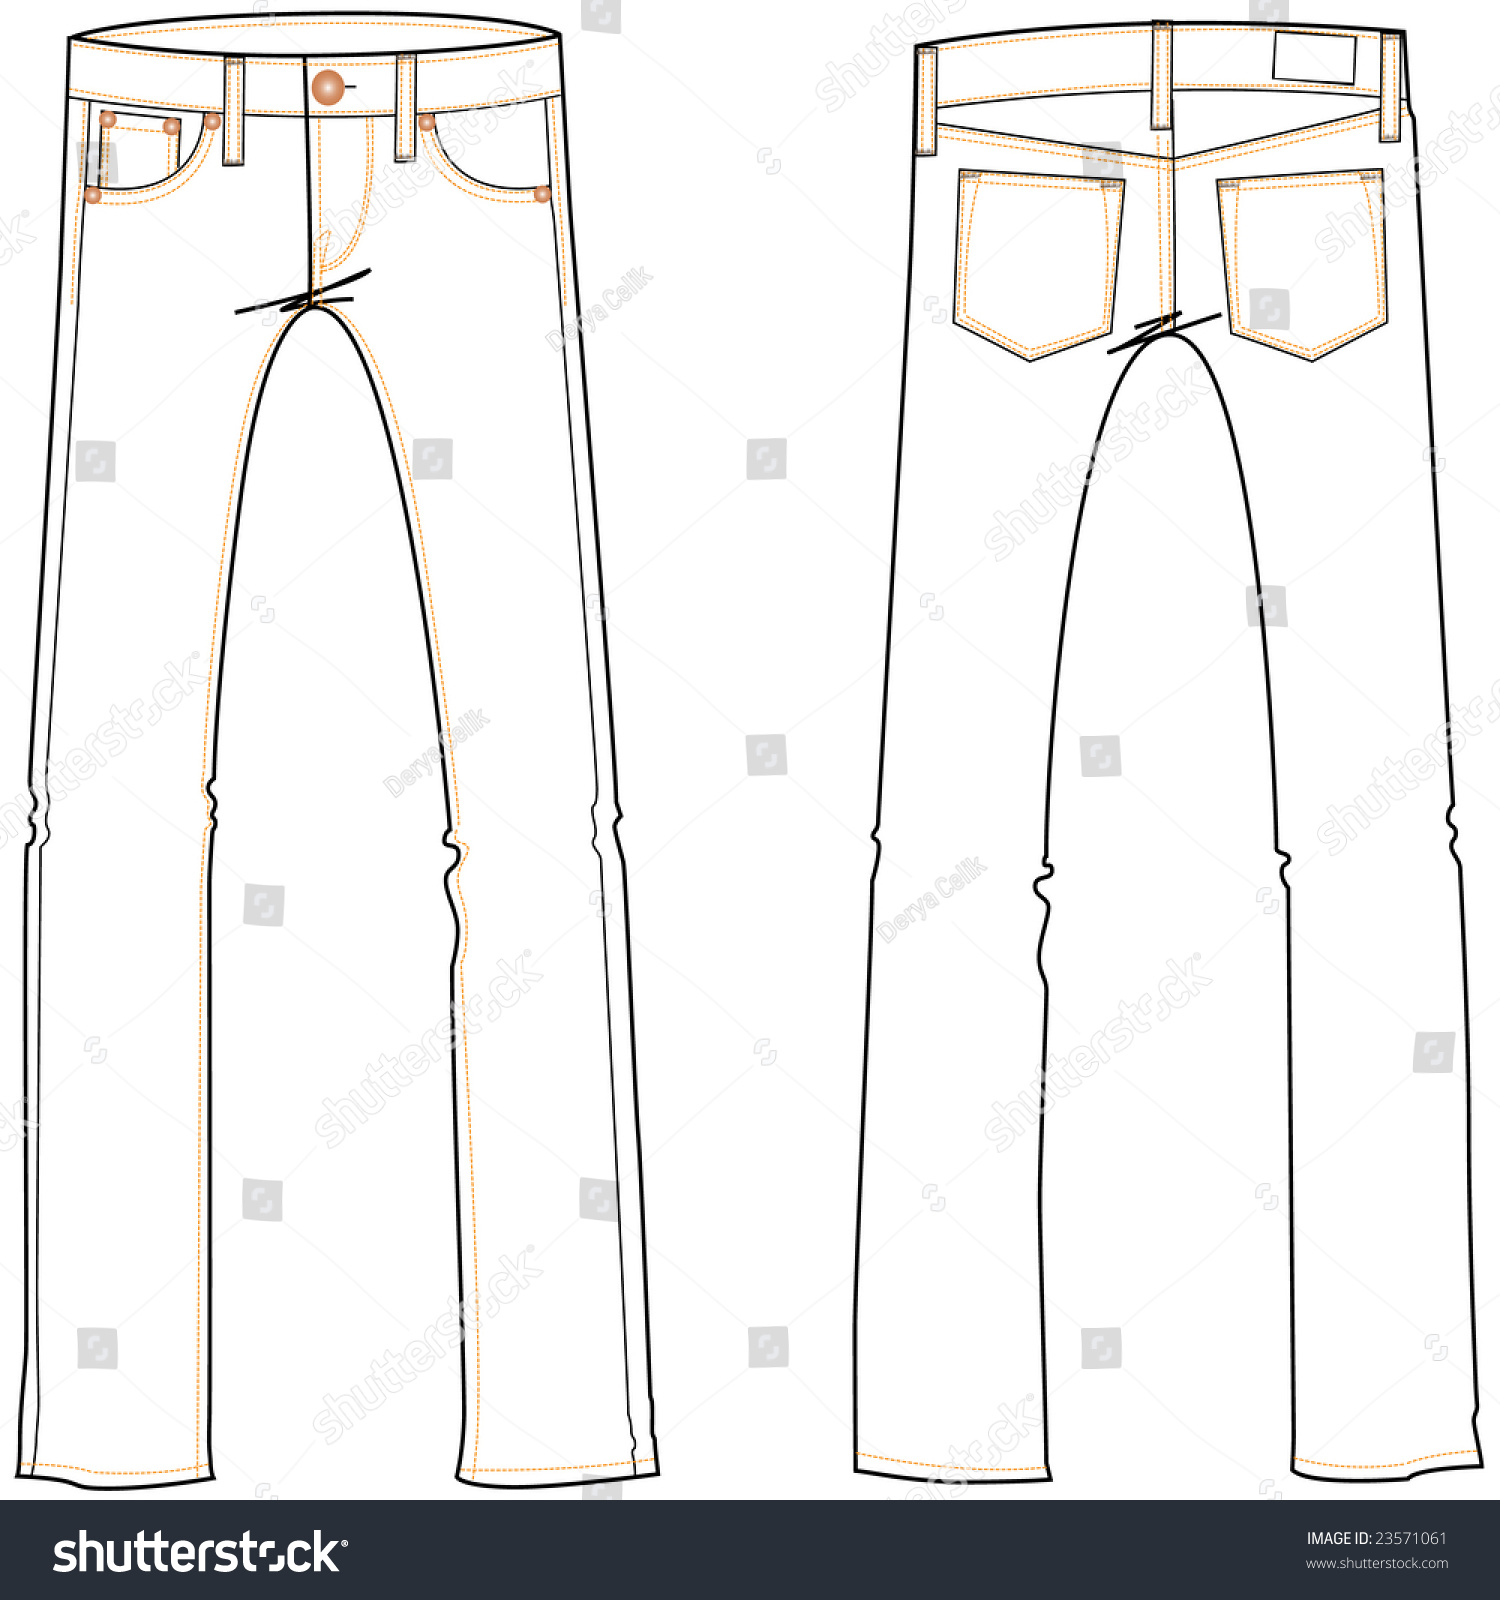 Basic Jeans Illustration - 23571061 : Shutterstock